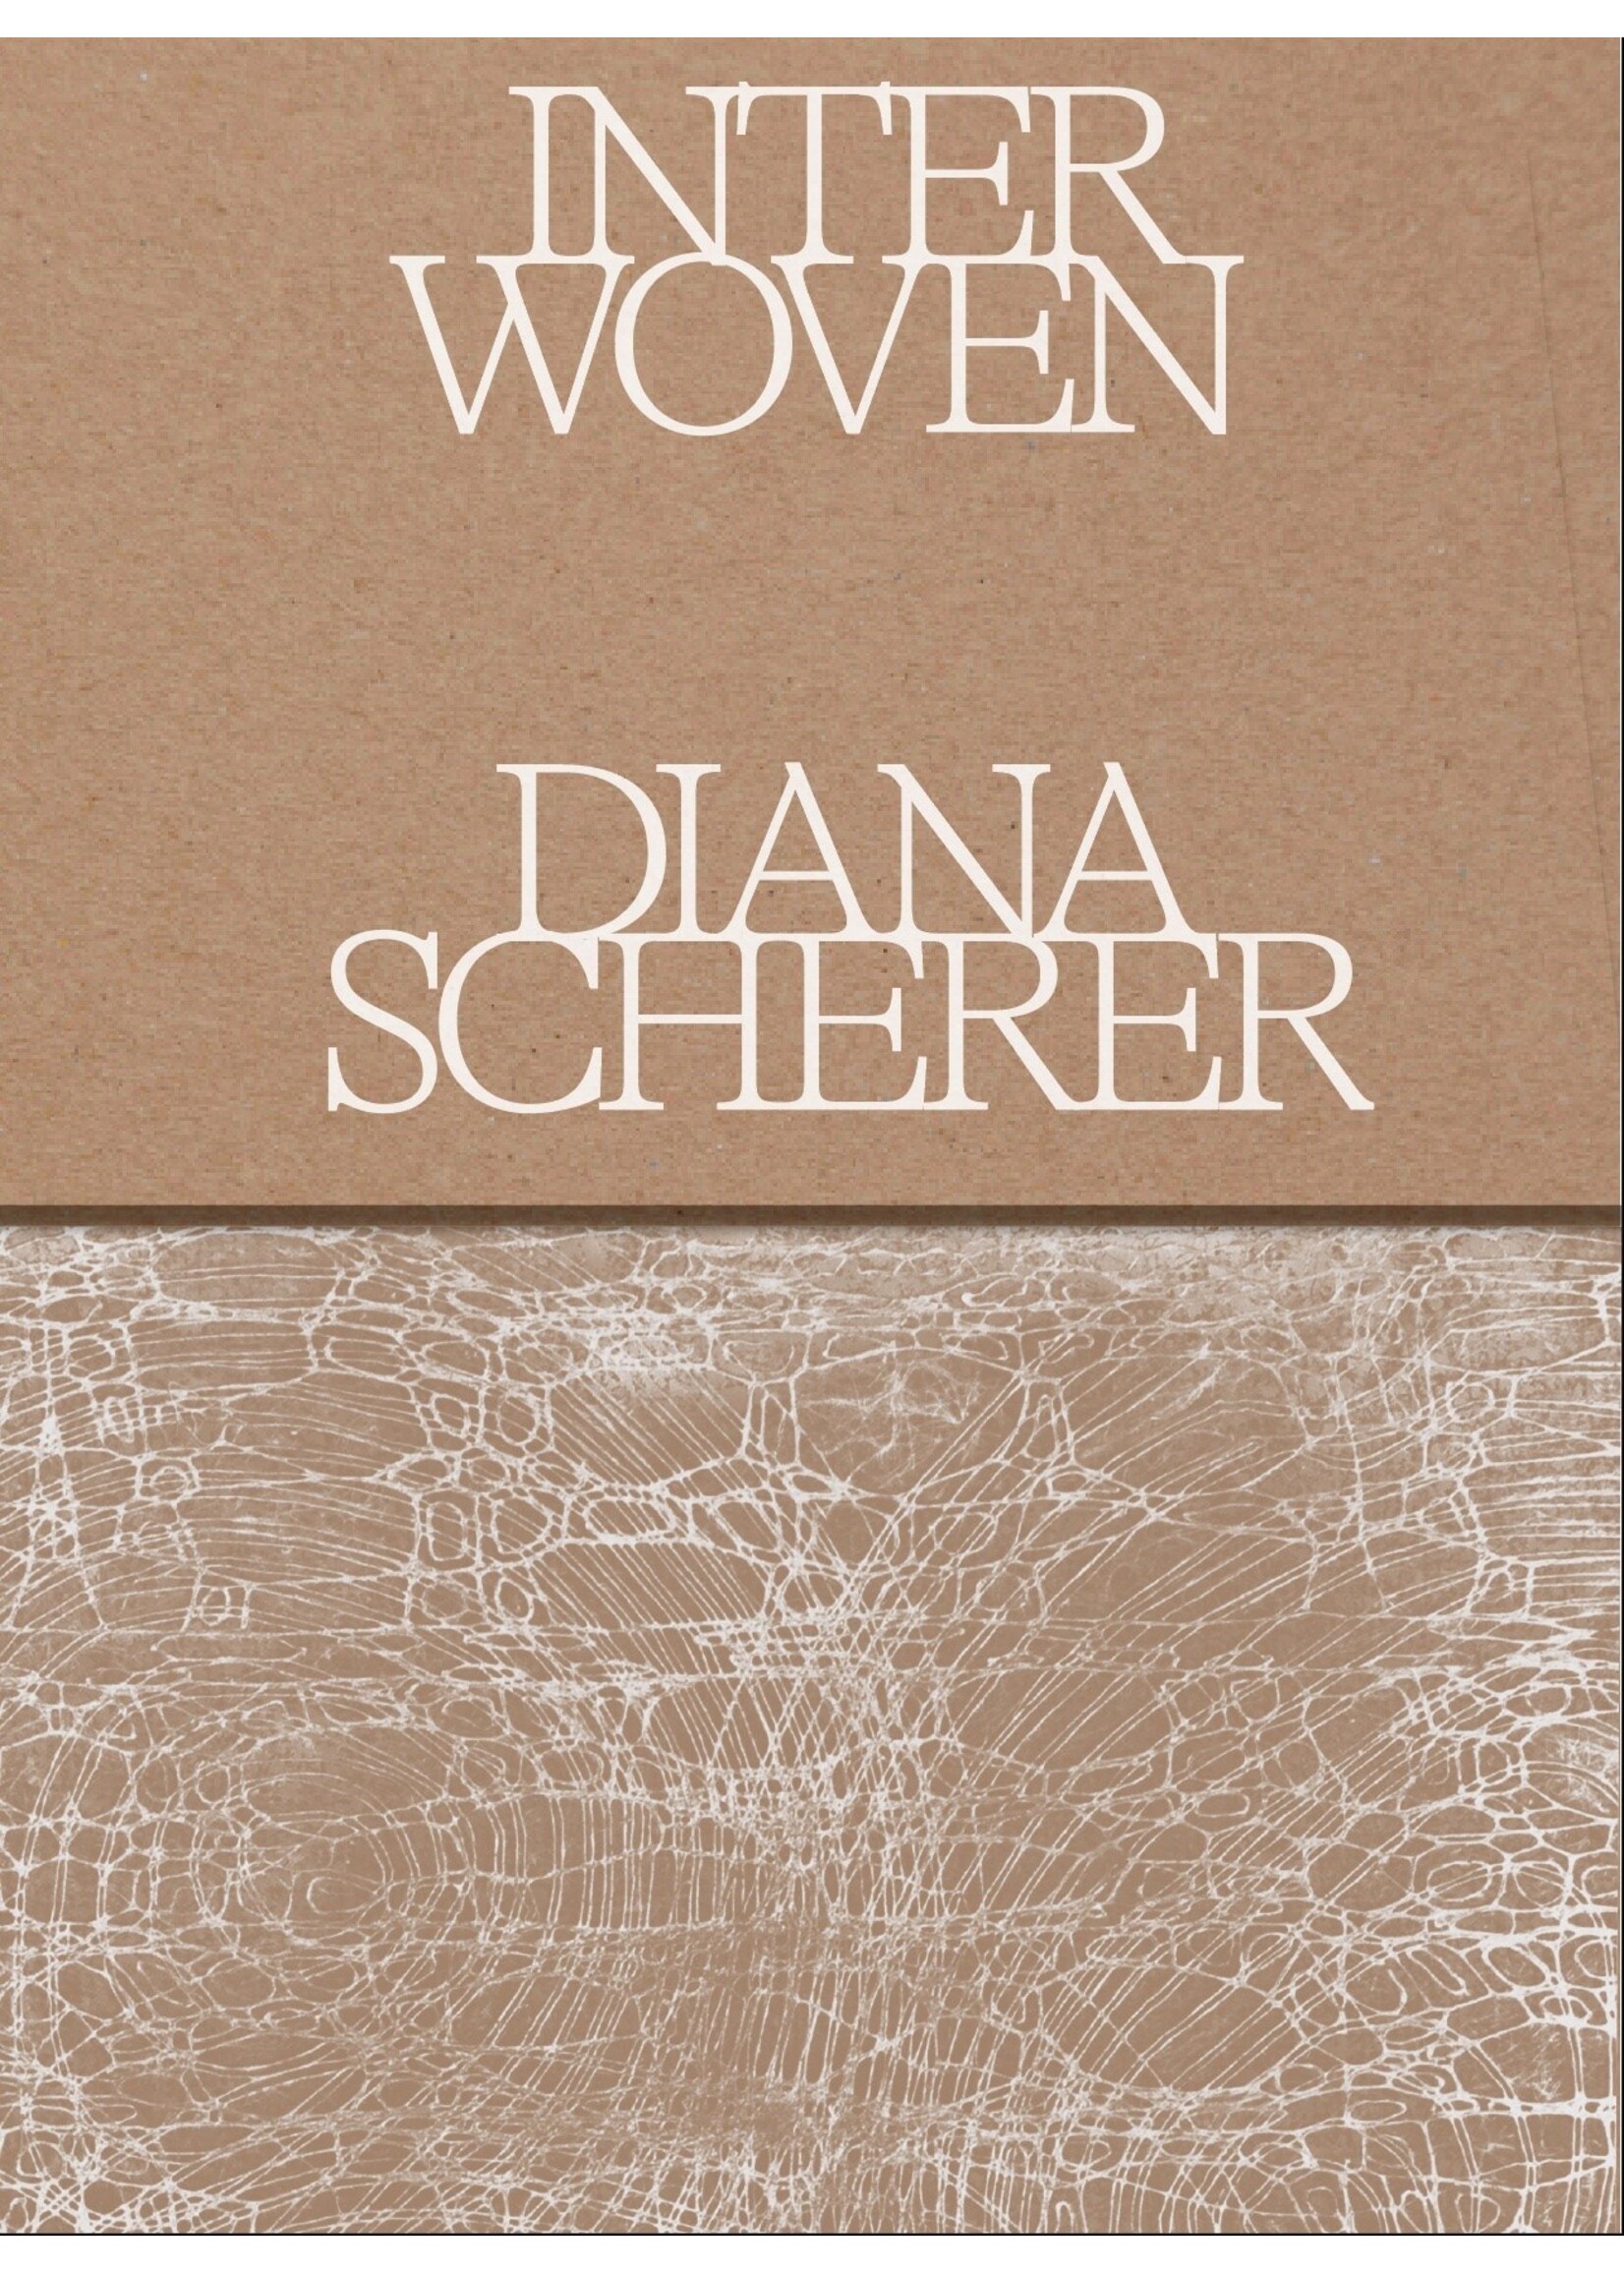 Boek tentoonstelling Diana Scherer Interwoven